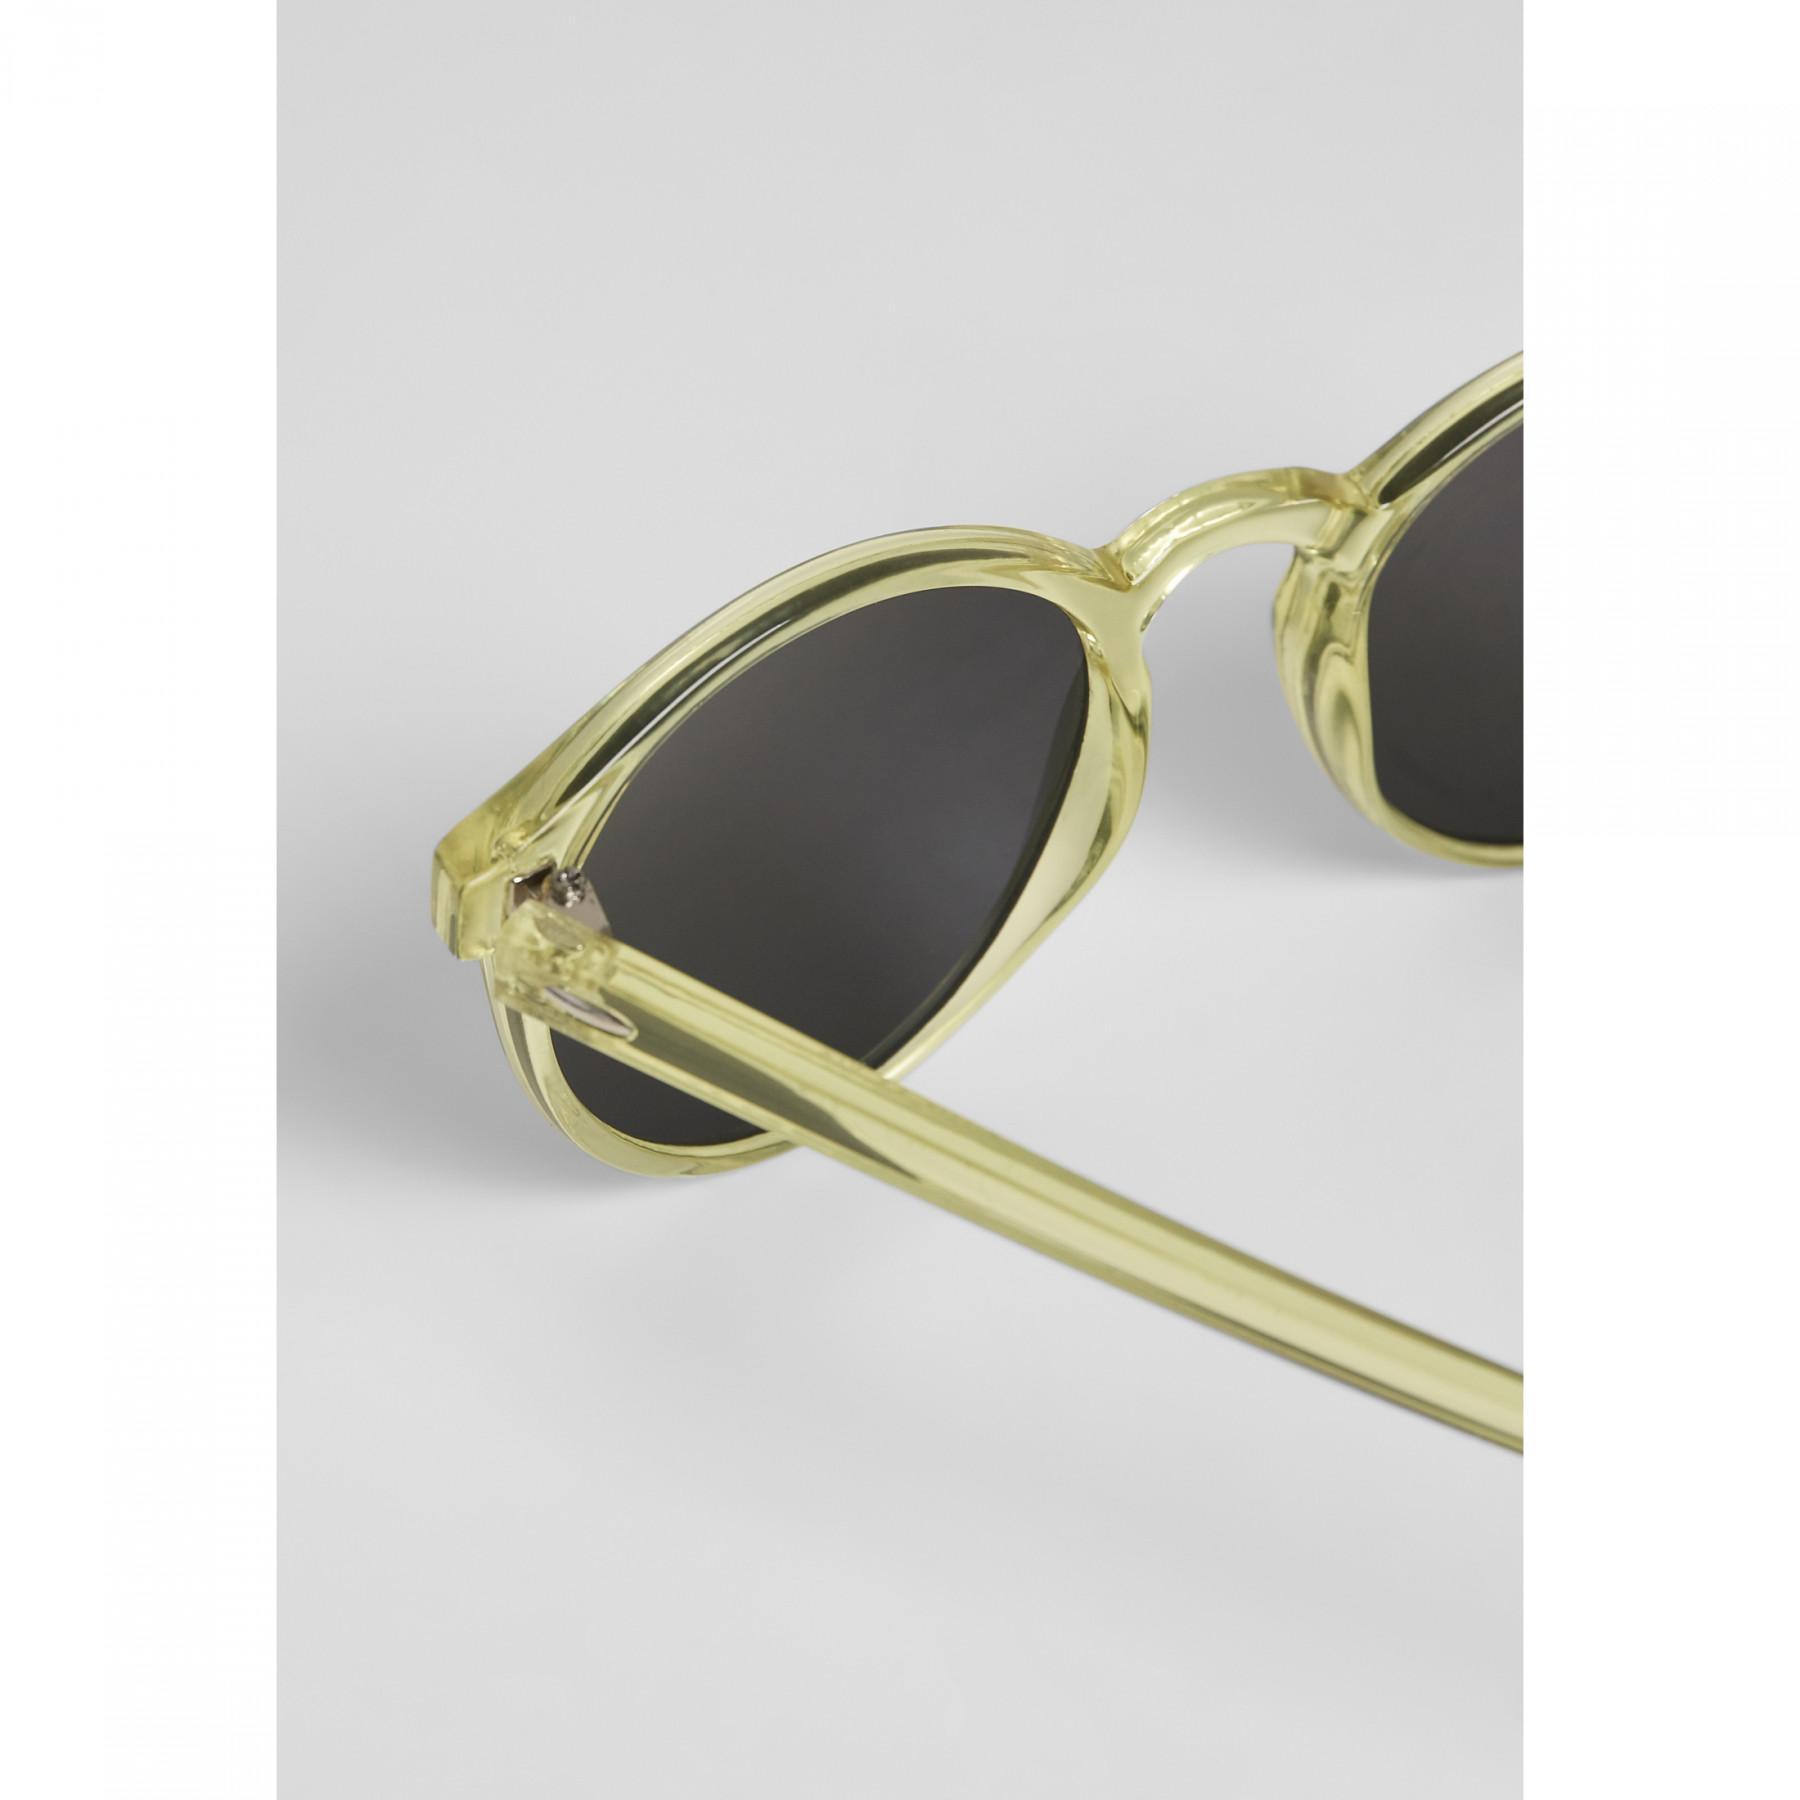 Urban classic cypress sunglasses (x3) 